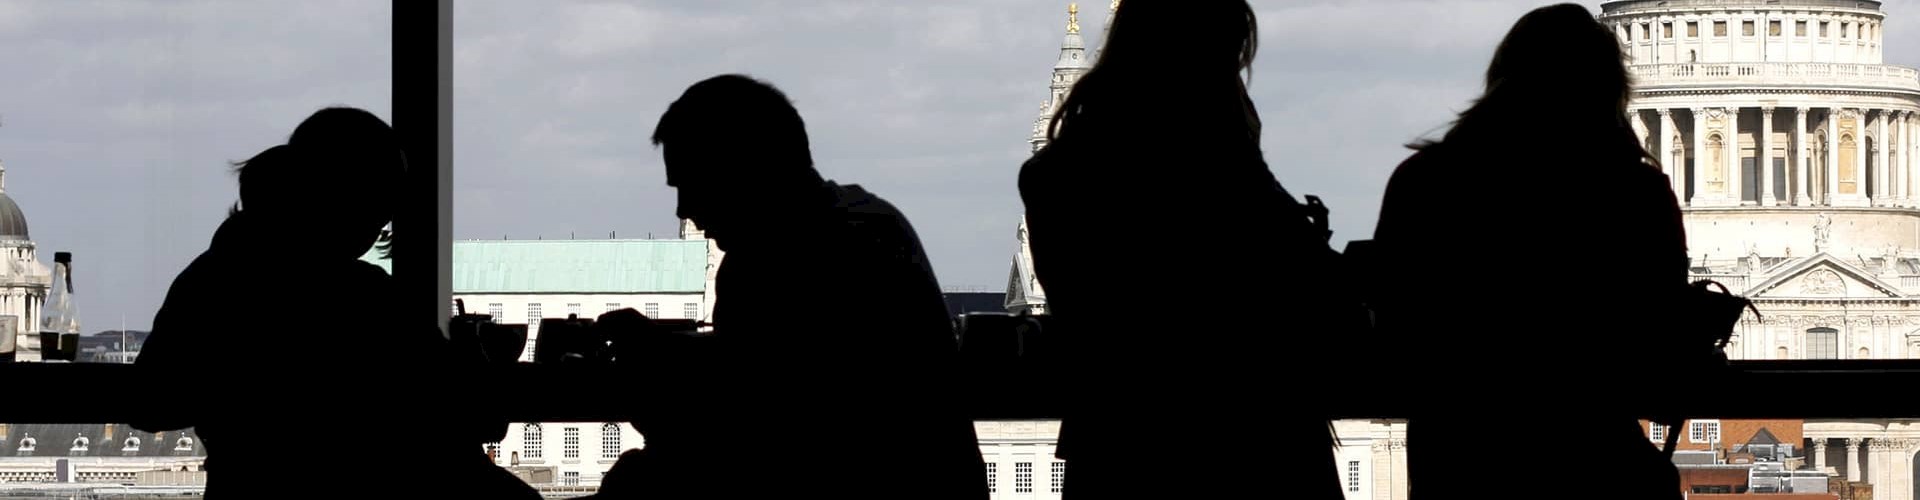 Billede af mennesker i London med Pauls Cathedral i baggrunden